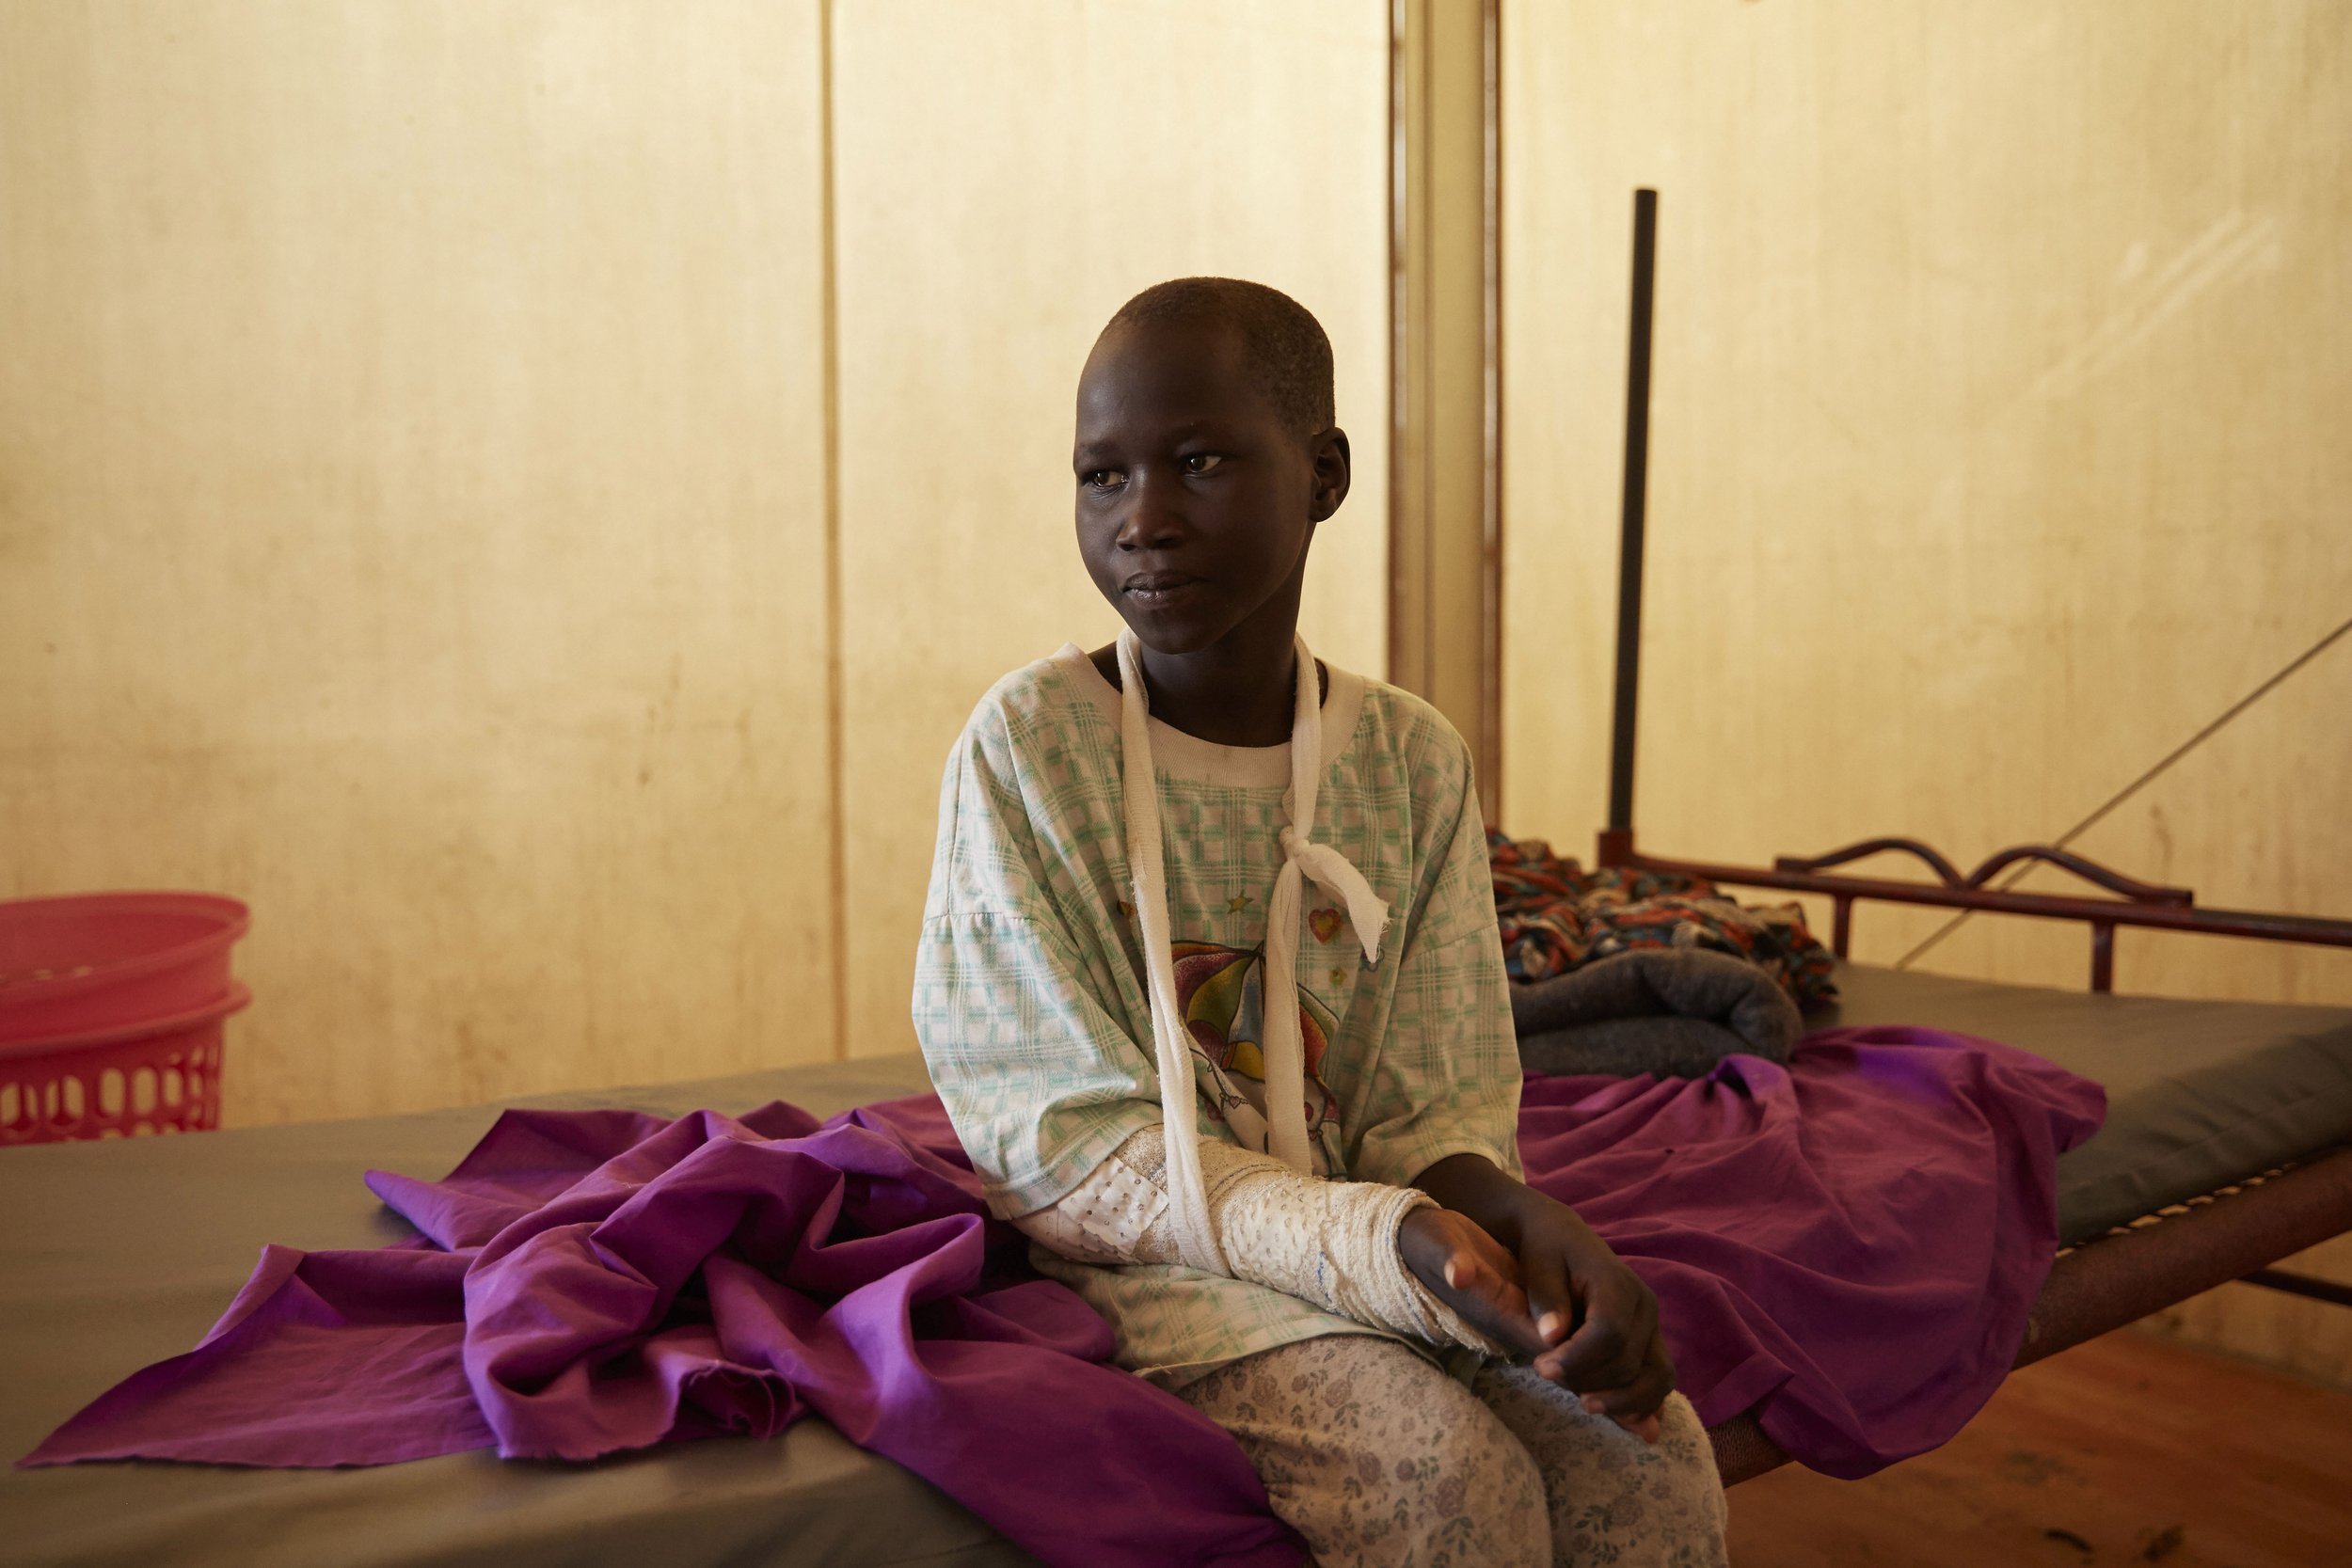  Médecins Sans Frontières (Doctors Without Borders), South Sudan 